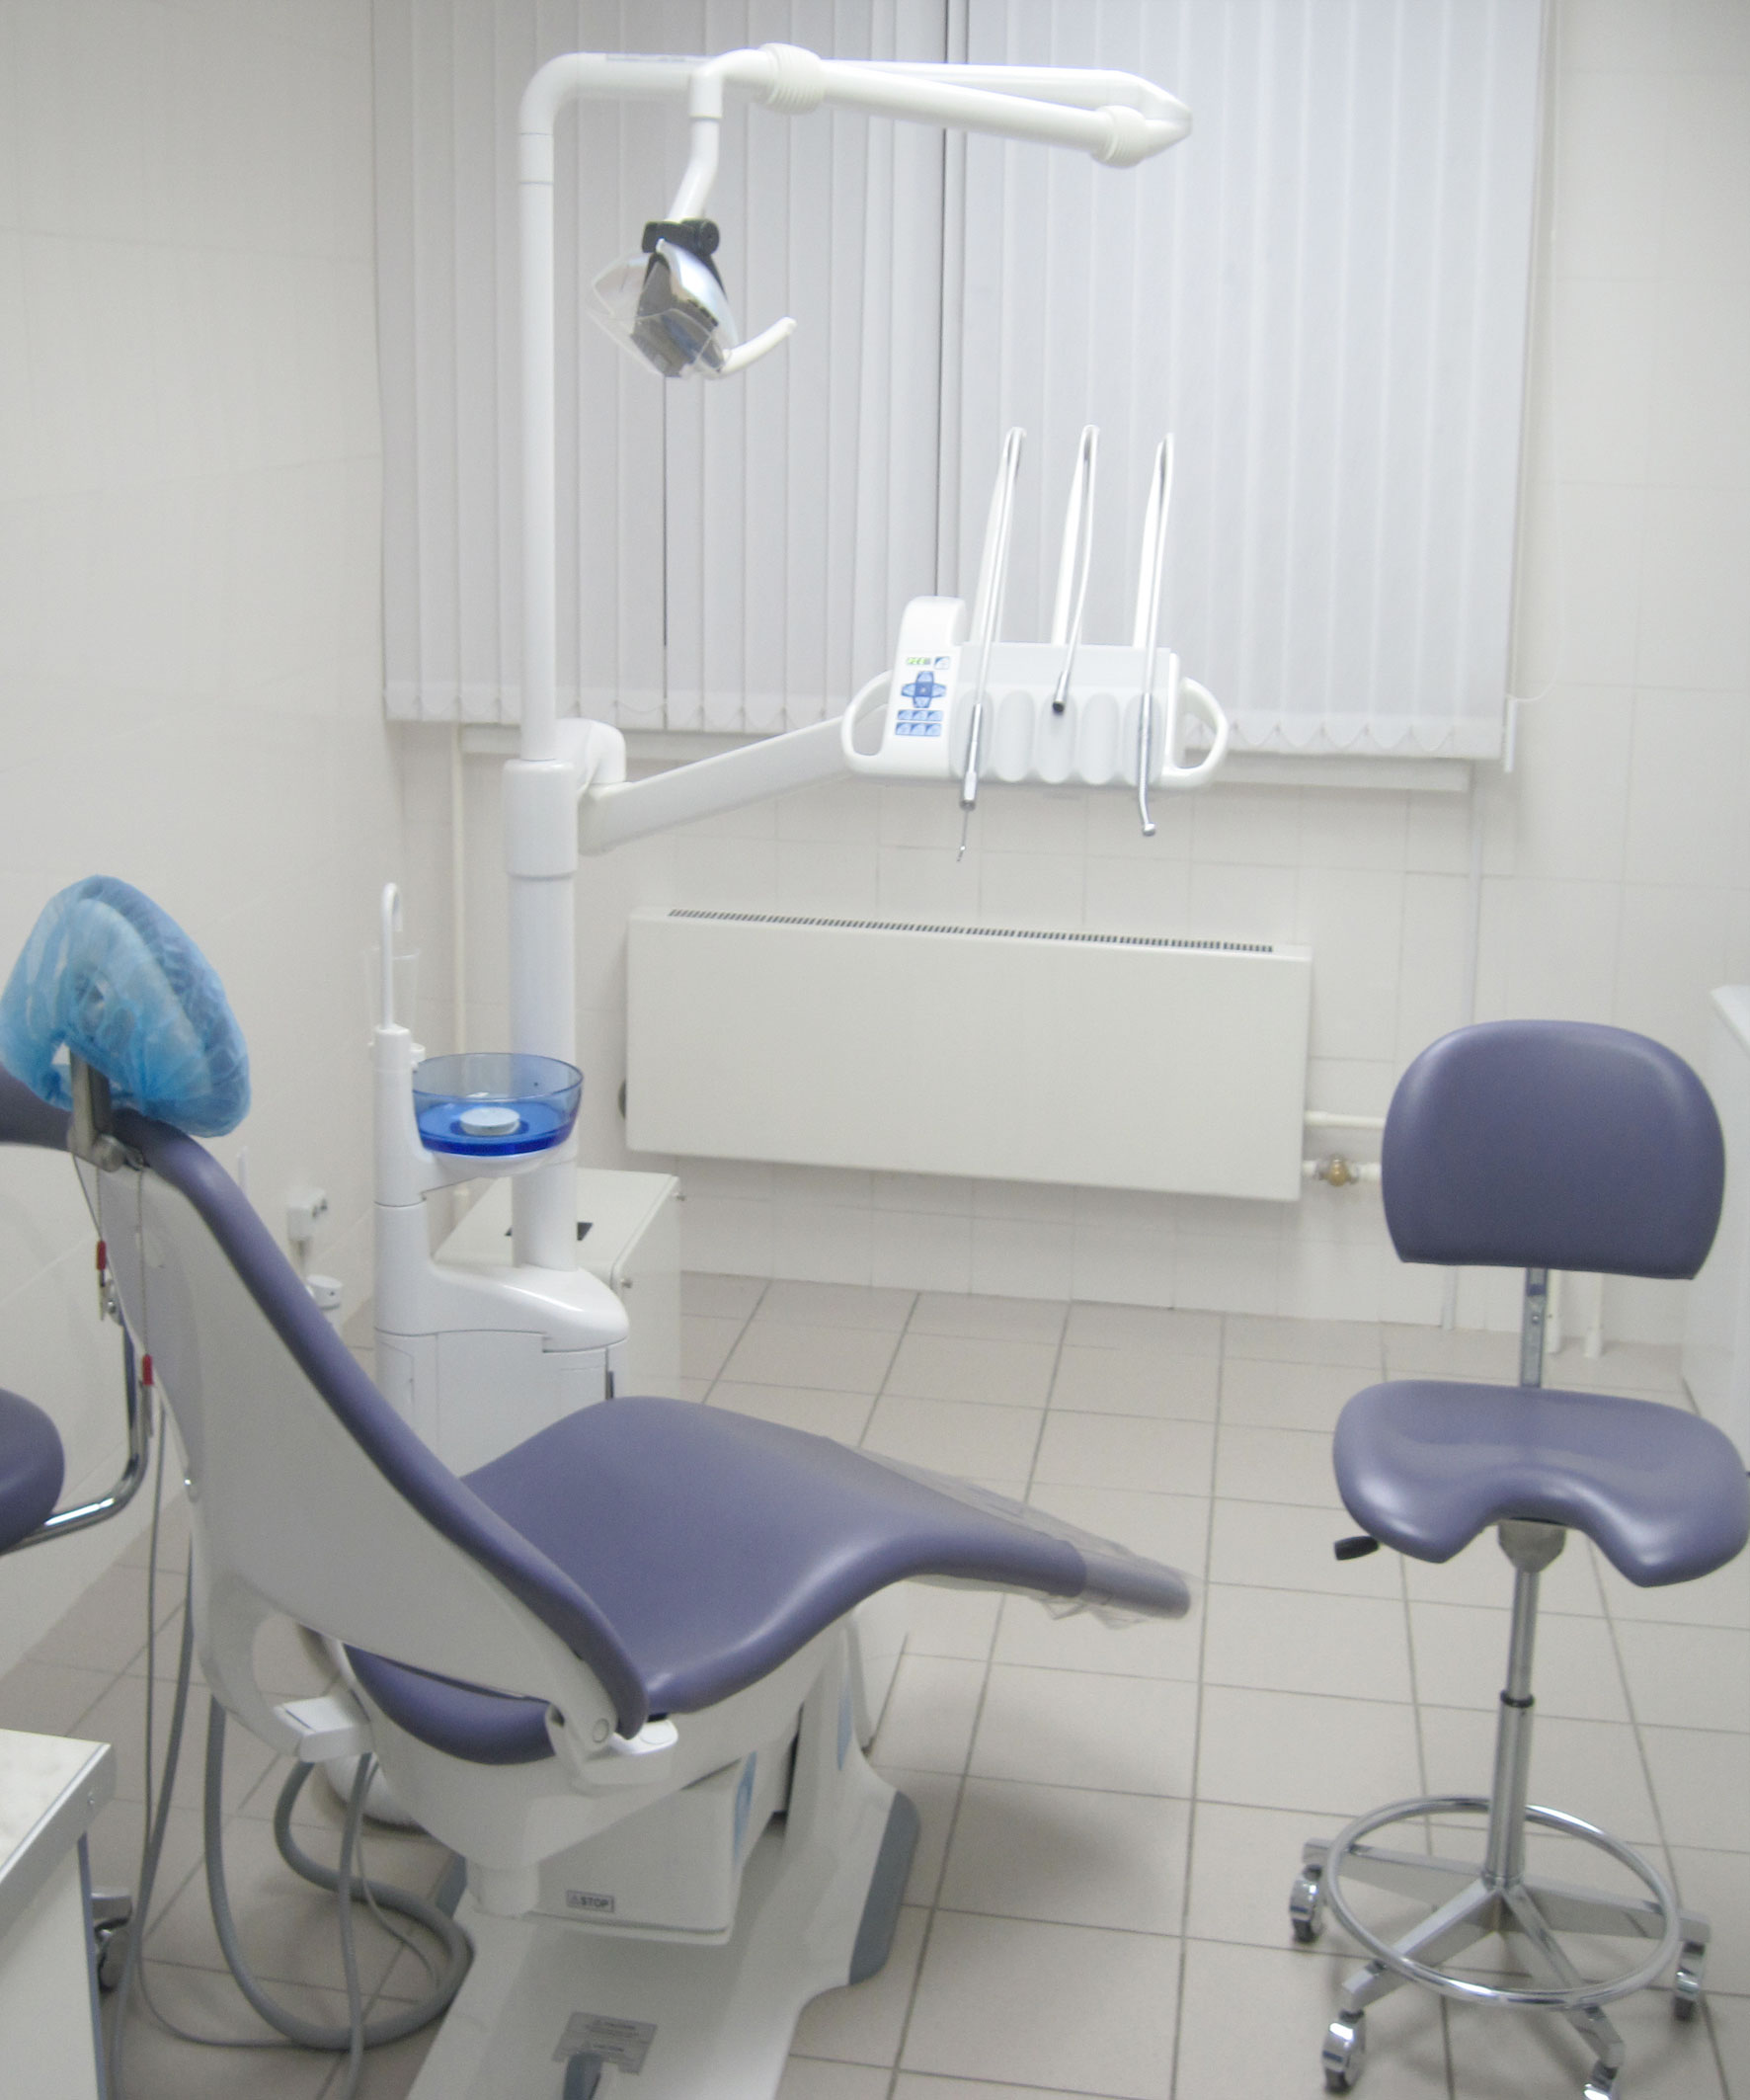 Стоматологія дента амо - відгуки пацієнтів, ціни і акції 2016 року, запис в клініку